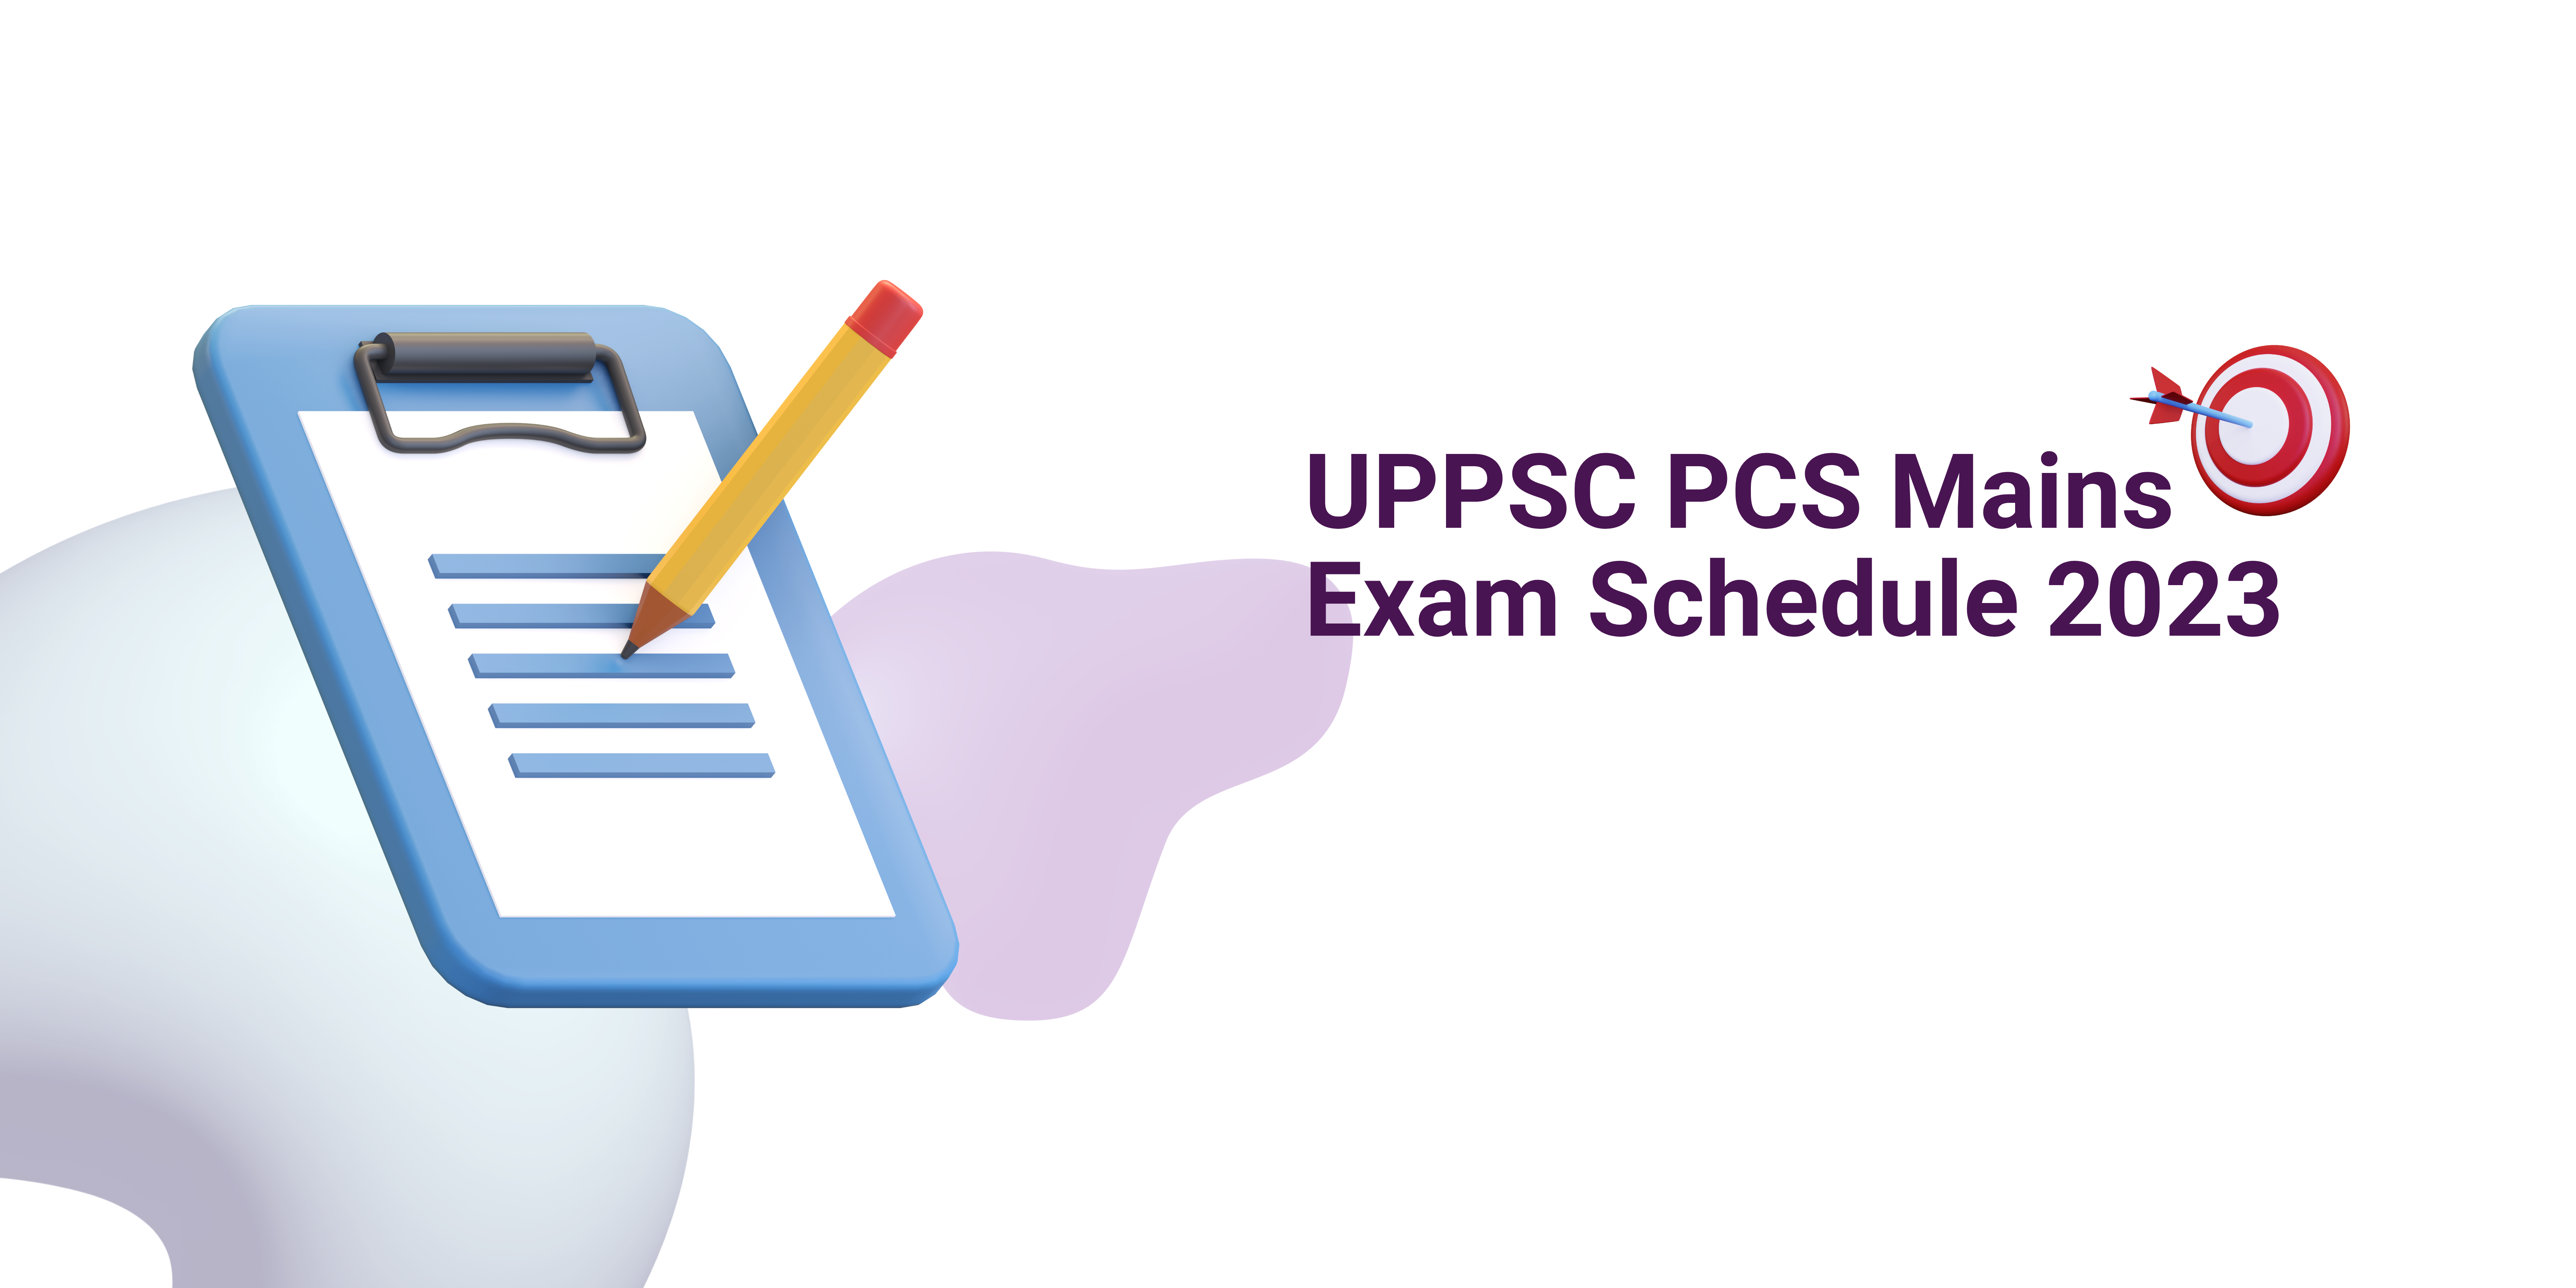 UPPSC PCS Mains Exam Schedule 2023